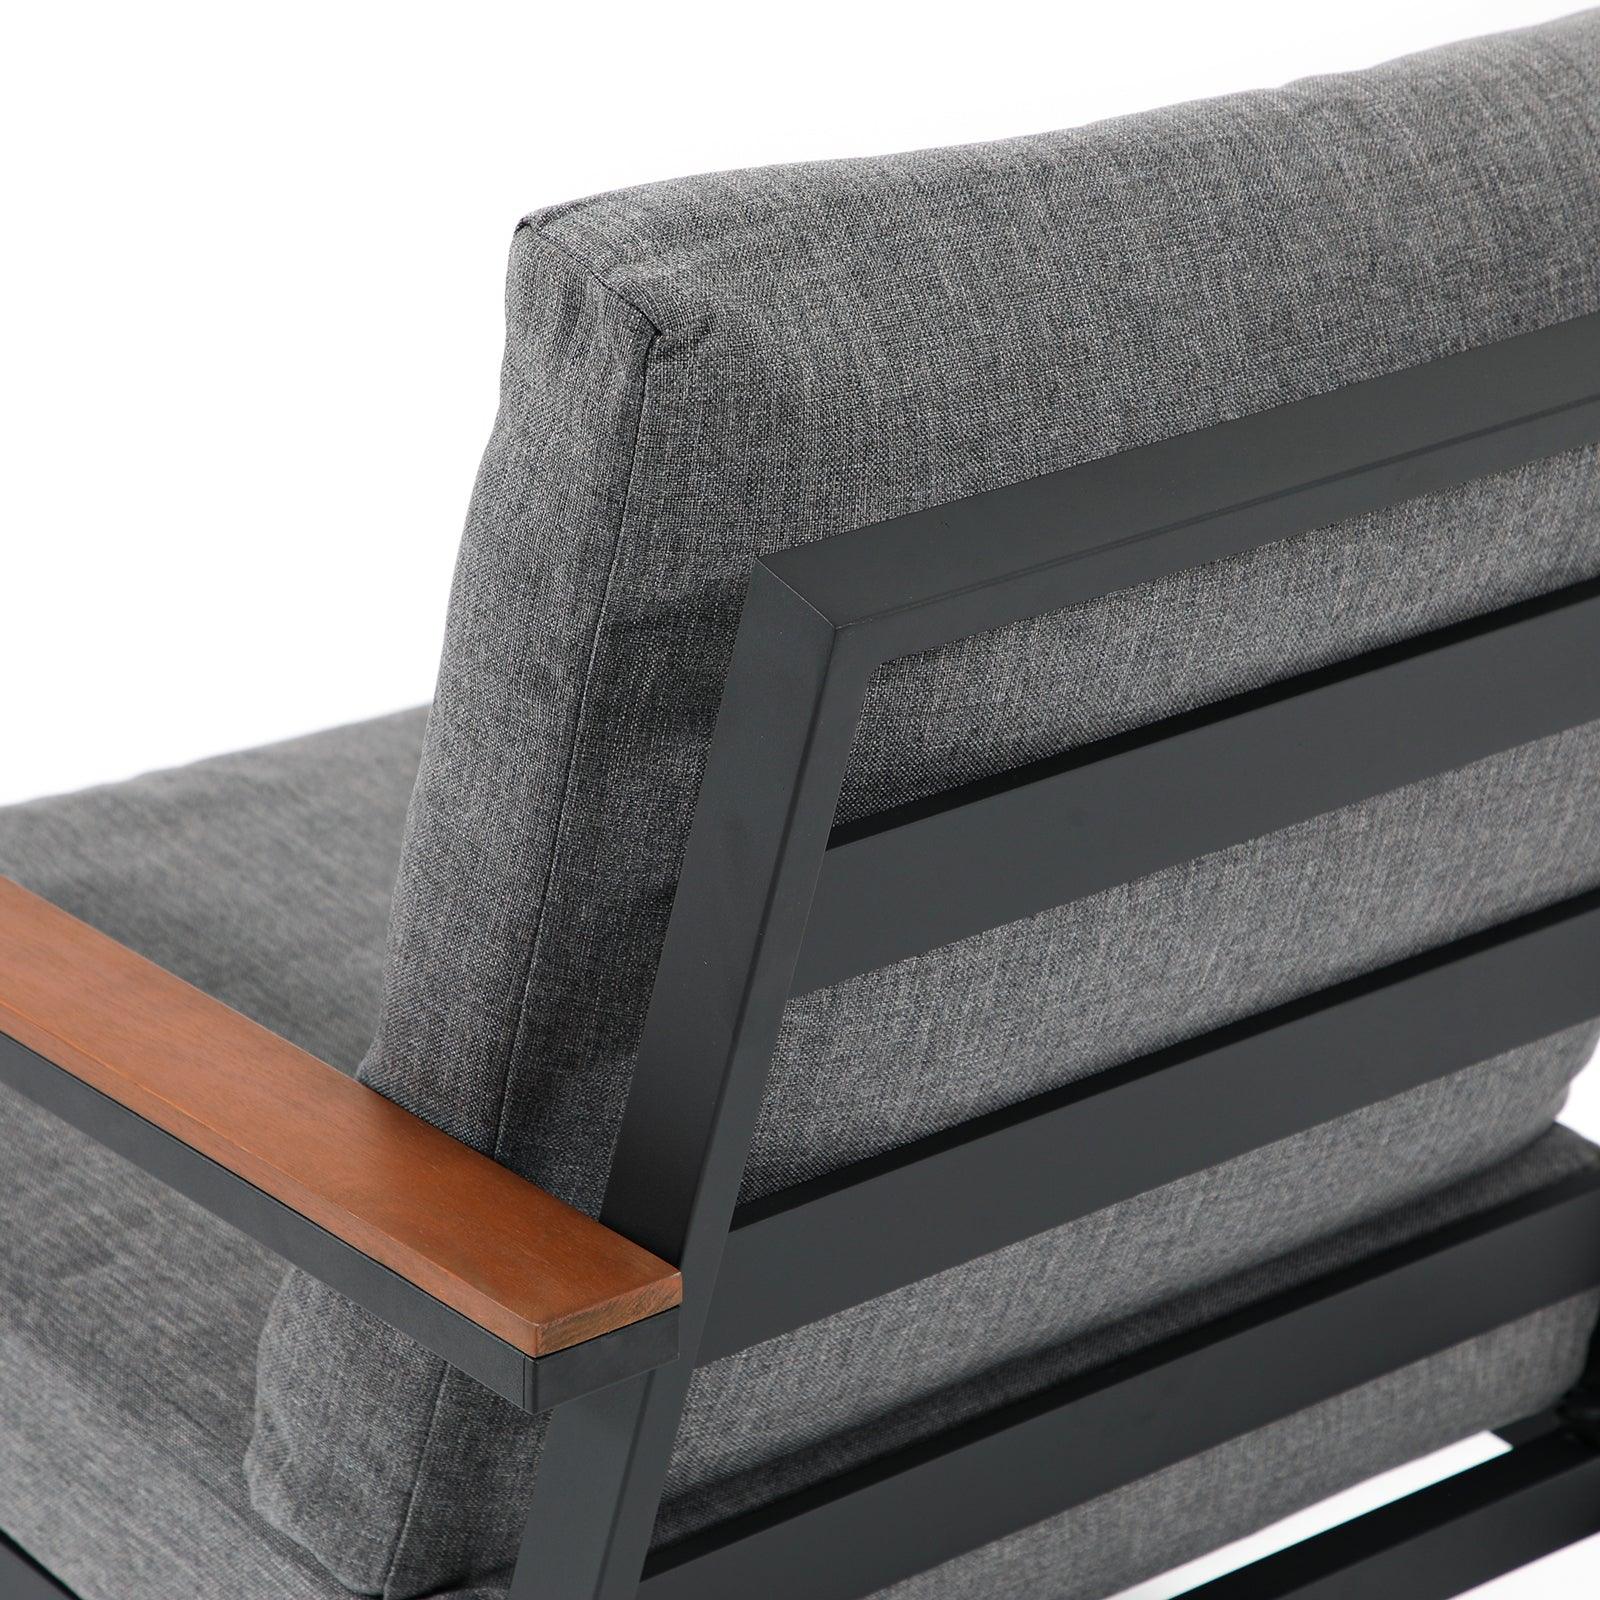 Ronda Grey aluminum outdoor sofa, grey cushions, durable aluminum frame, back close-up view- Jardina Furniture